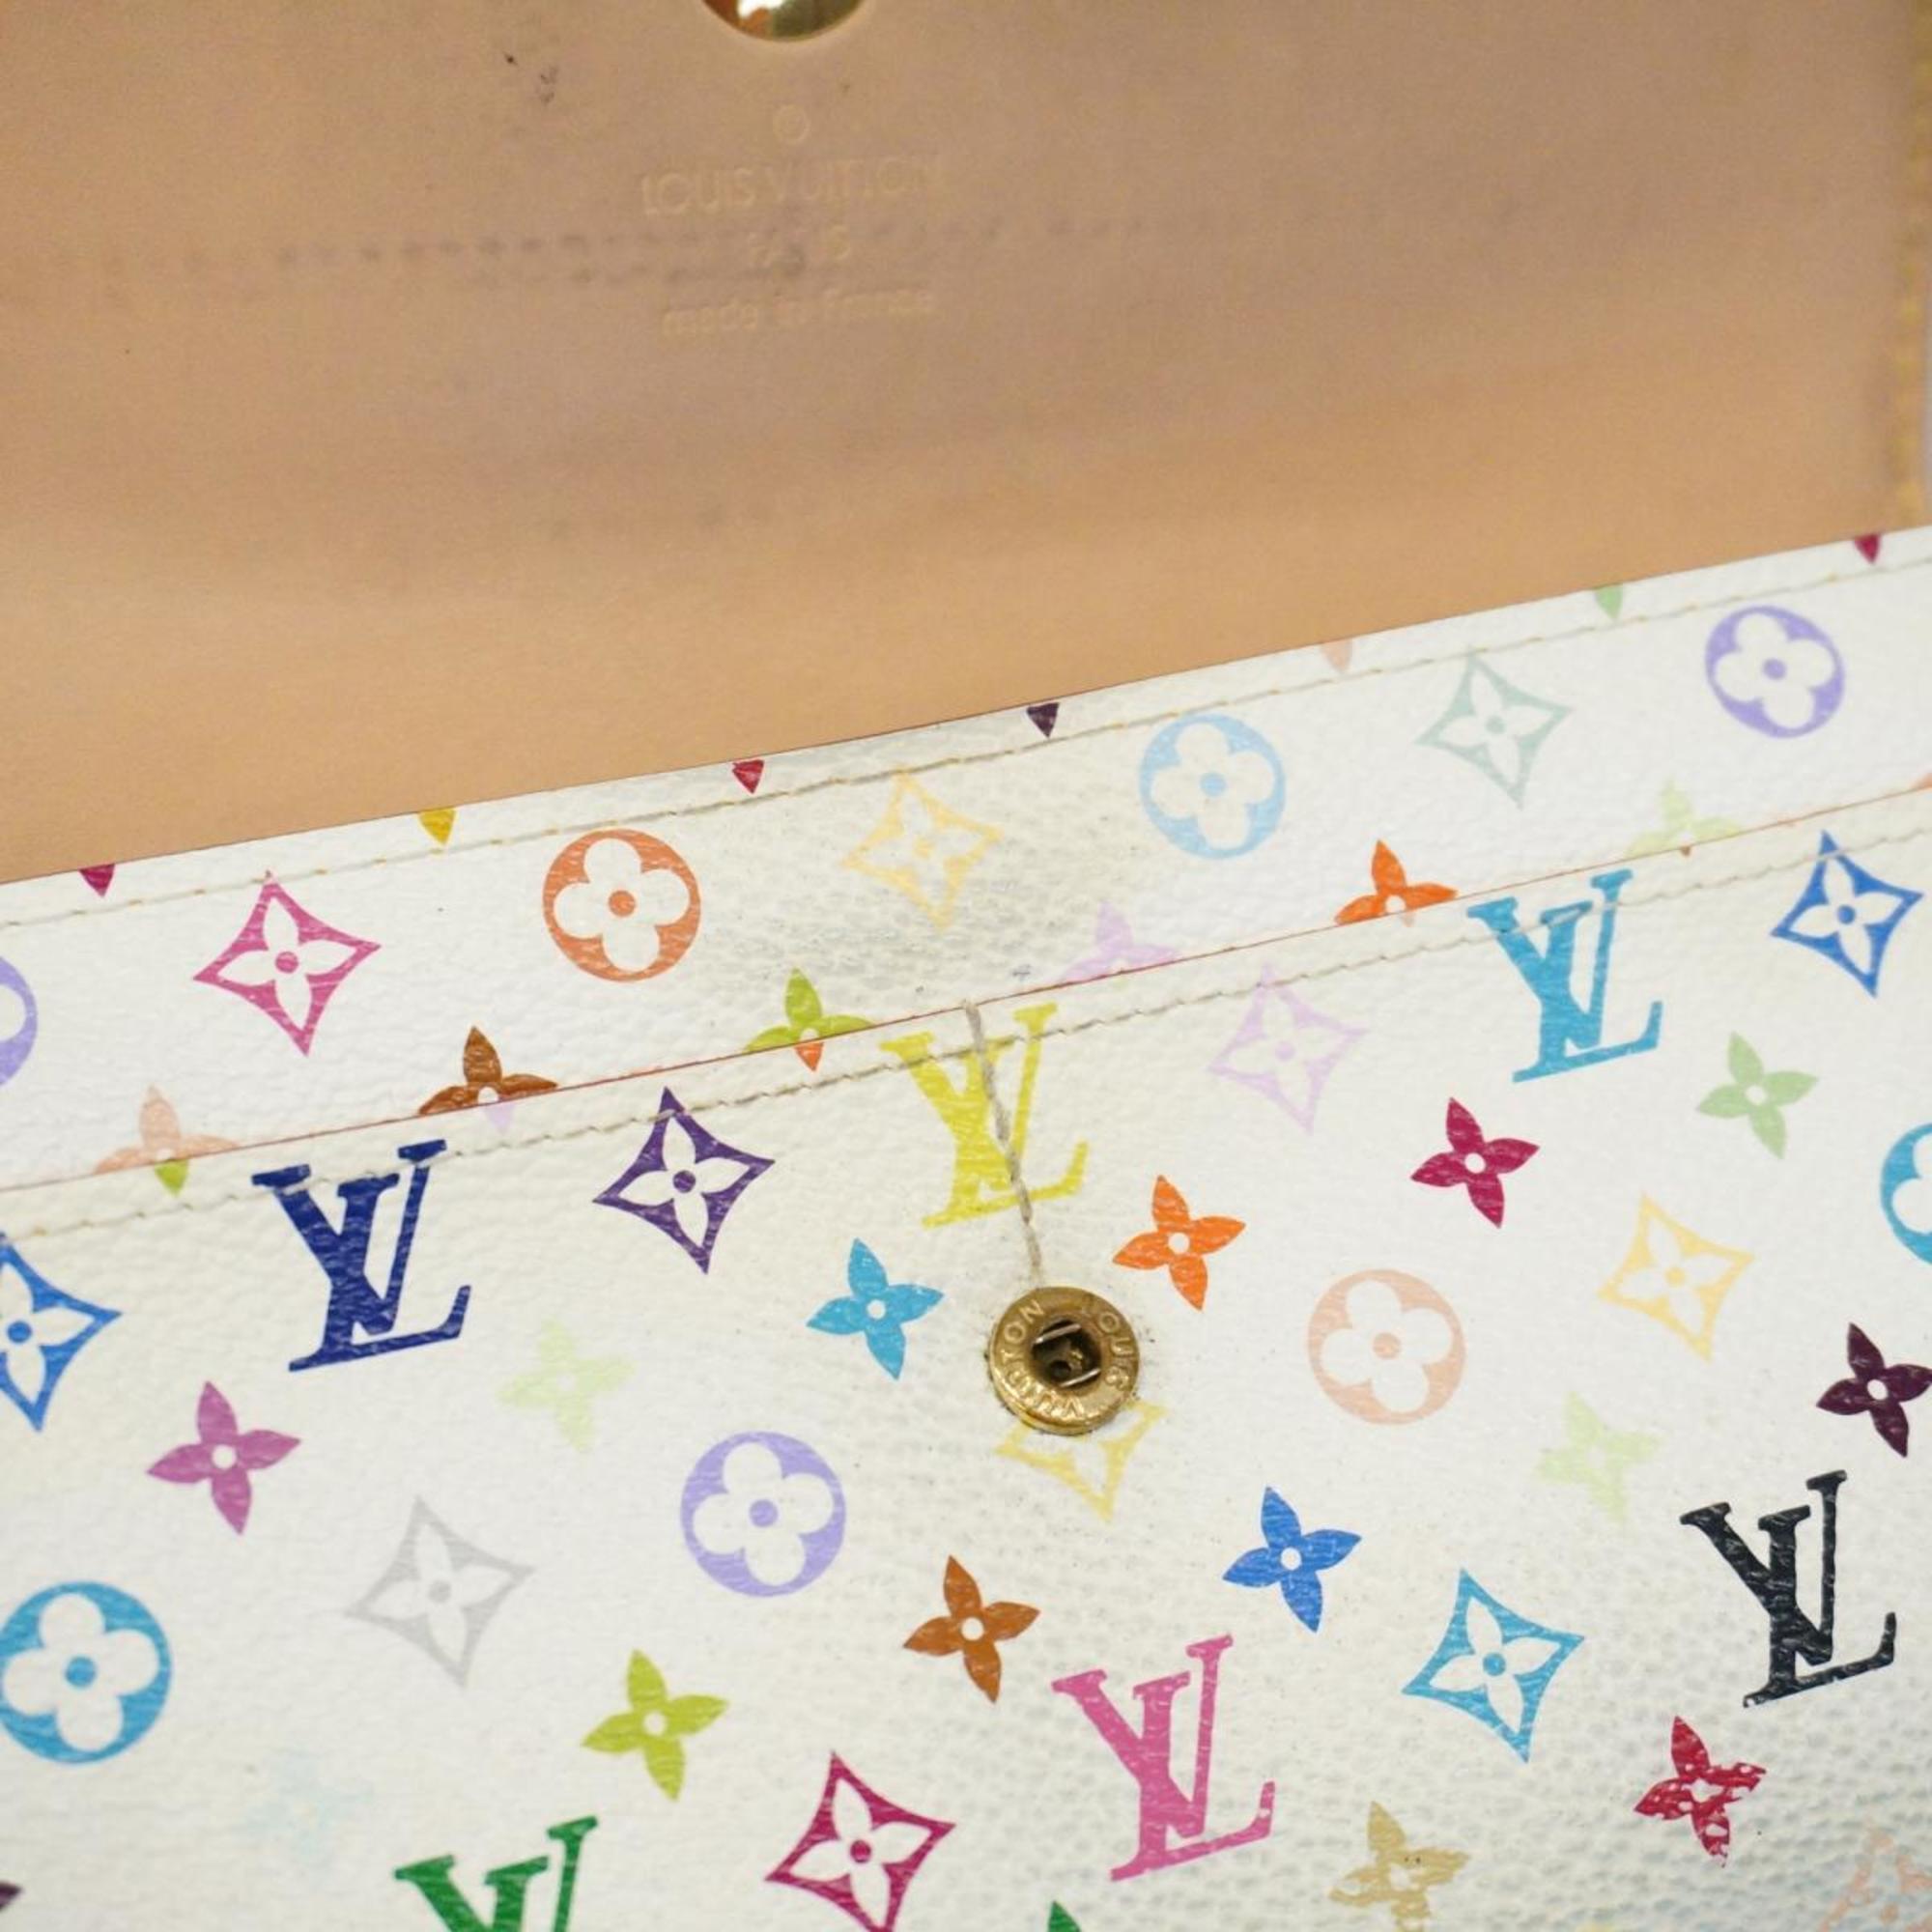 Louis Vuitton Long Wallet Monogram Multicolor Portefeuille Sarah M93532 Bron Ladies